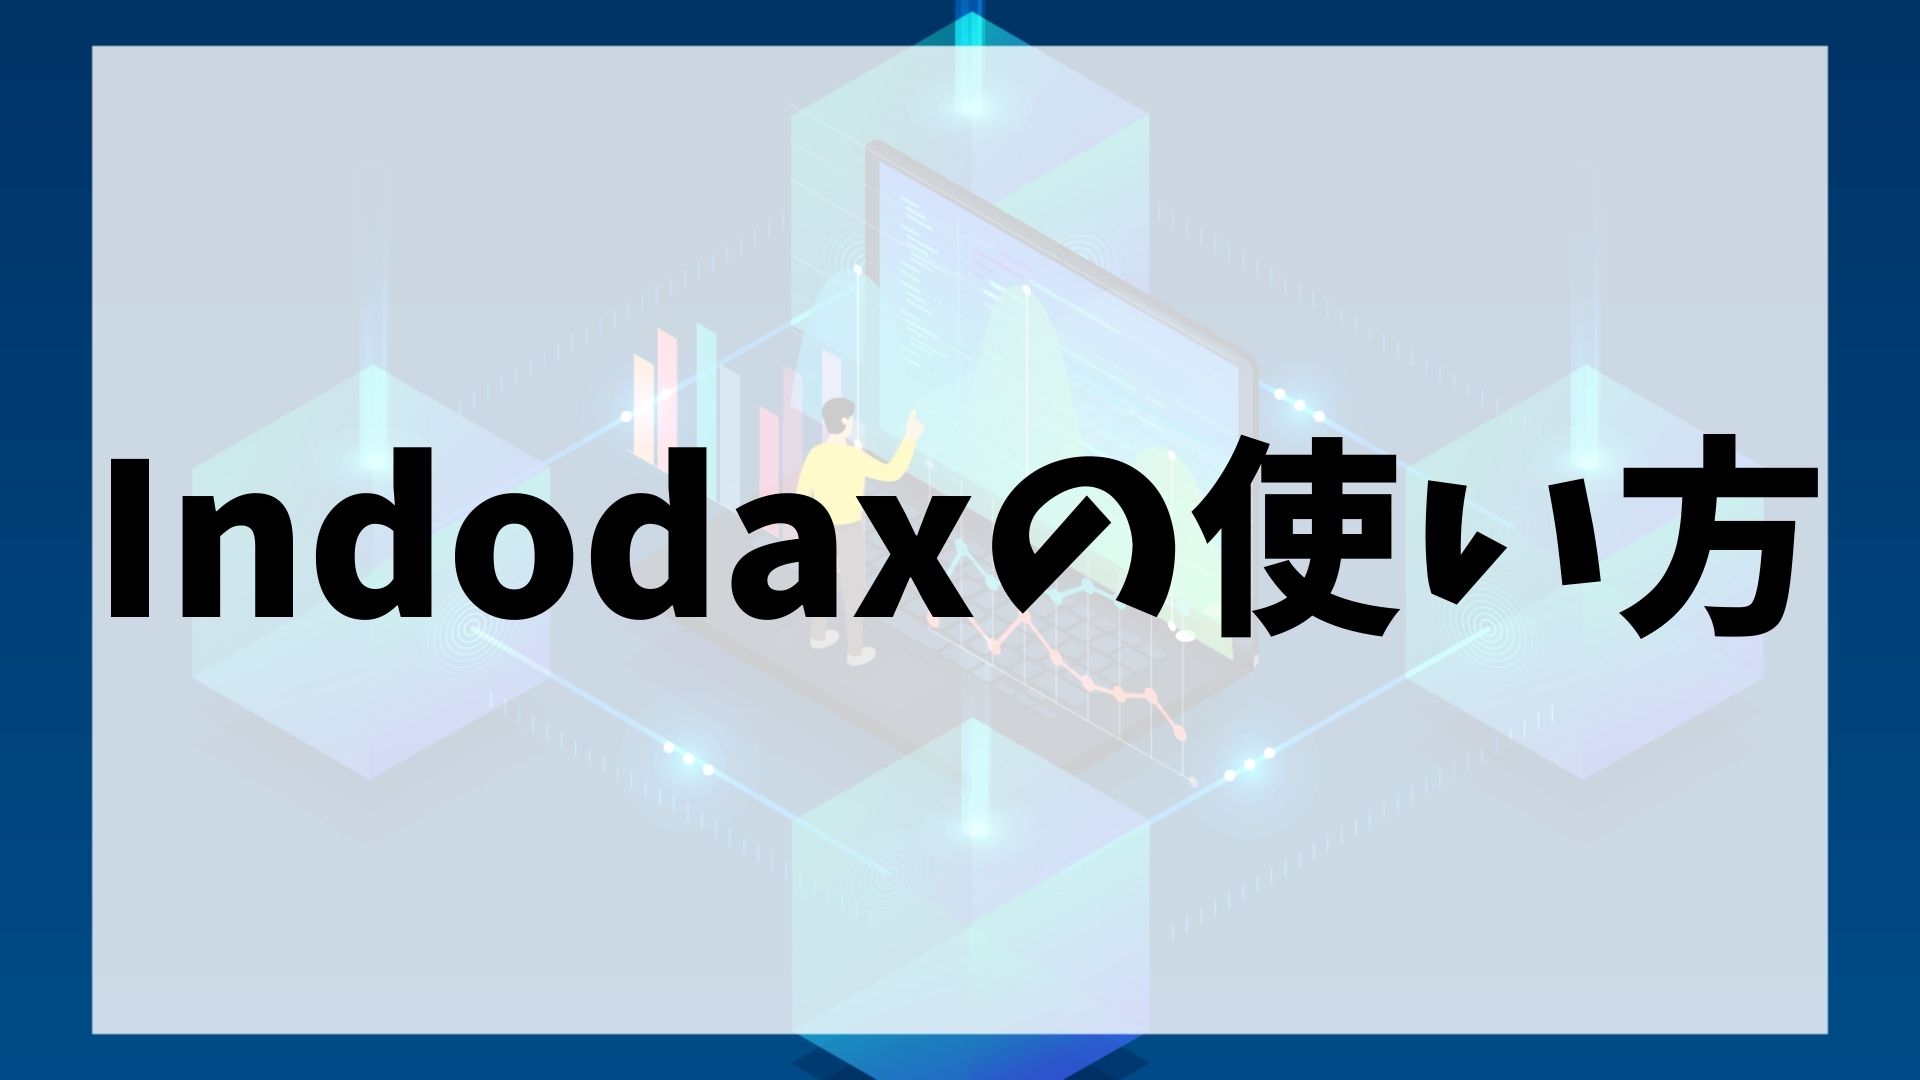 Indodax(インドダックス)の使い方